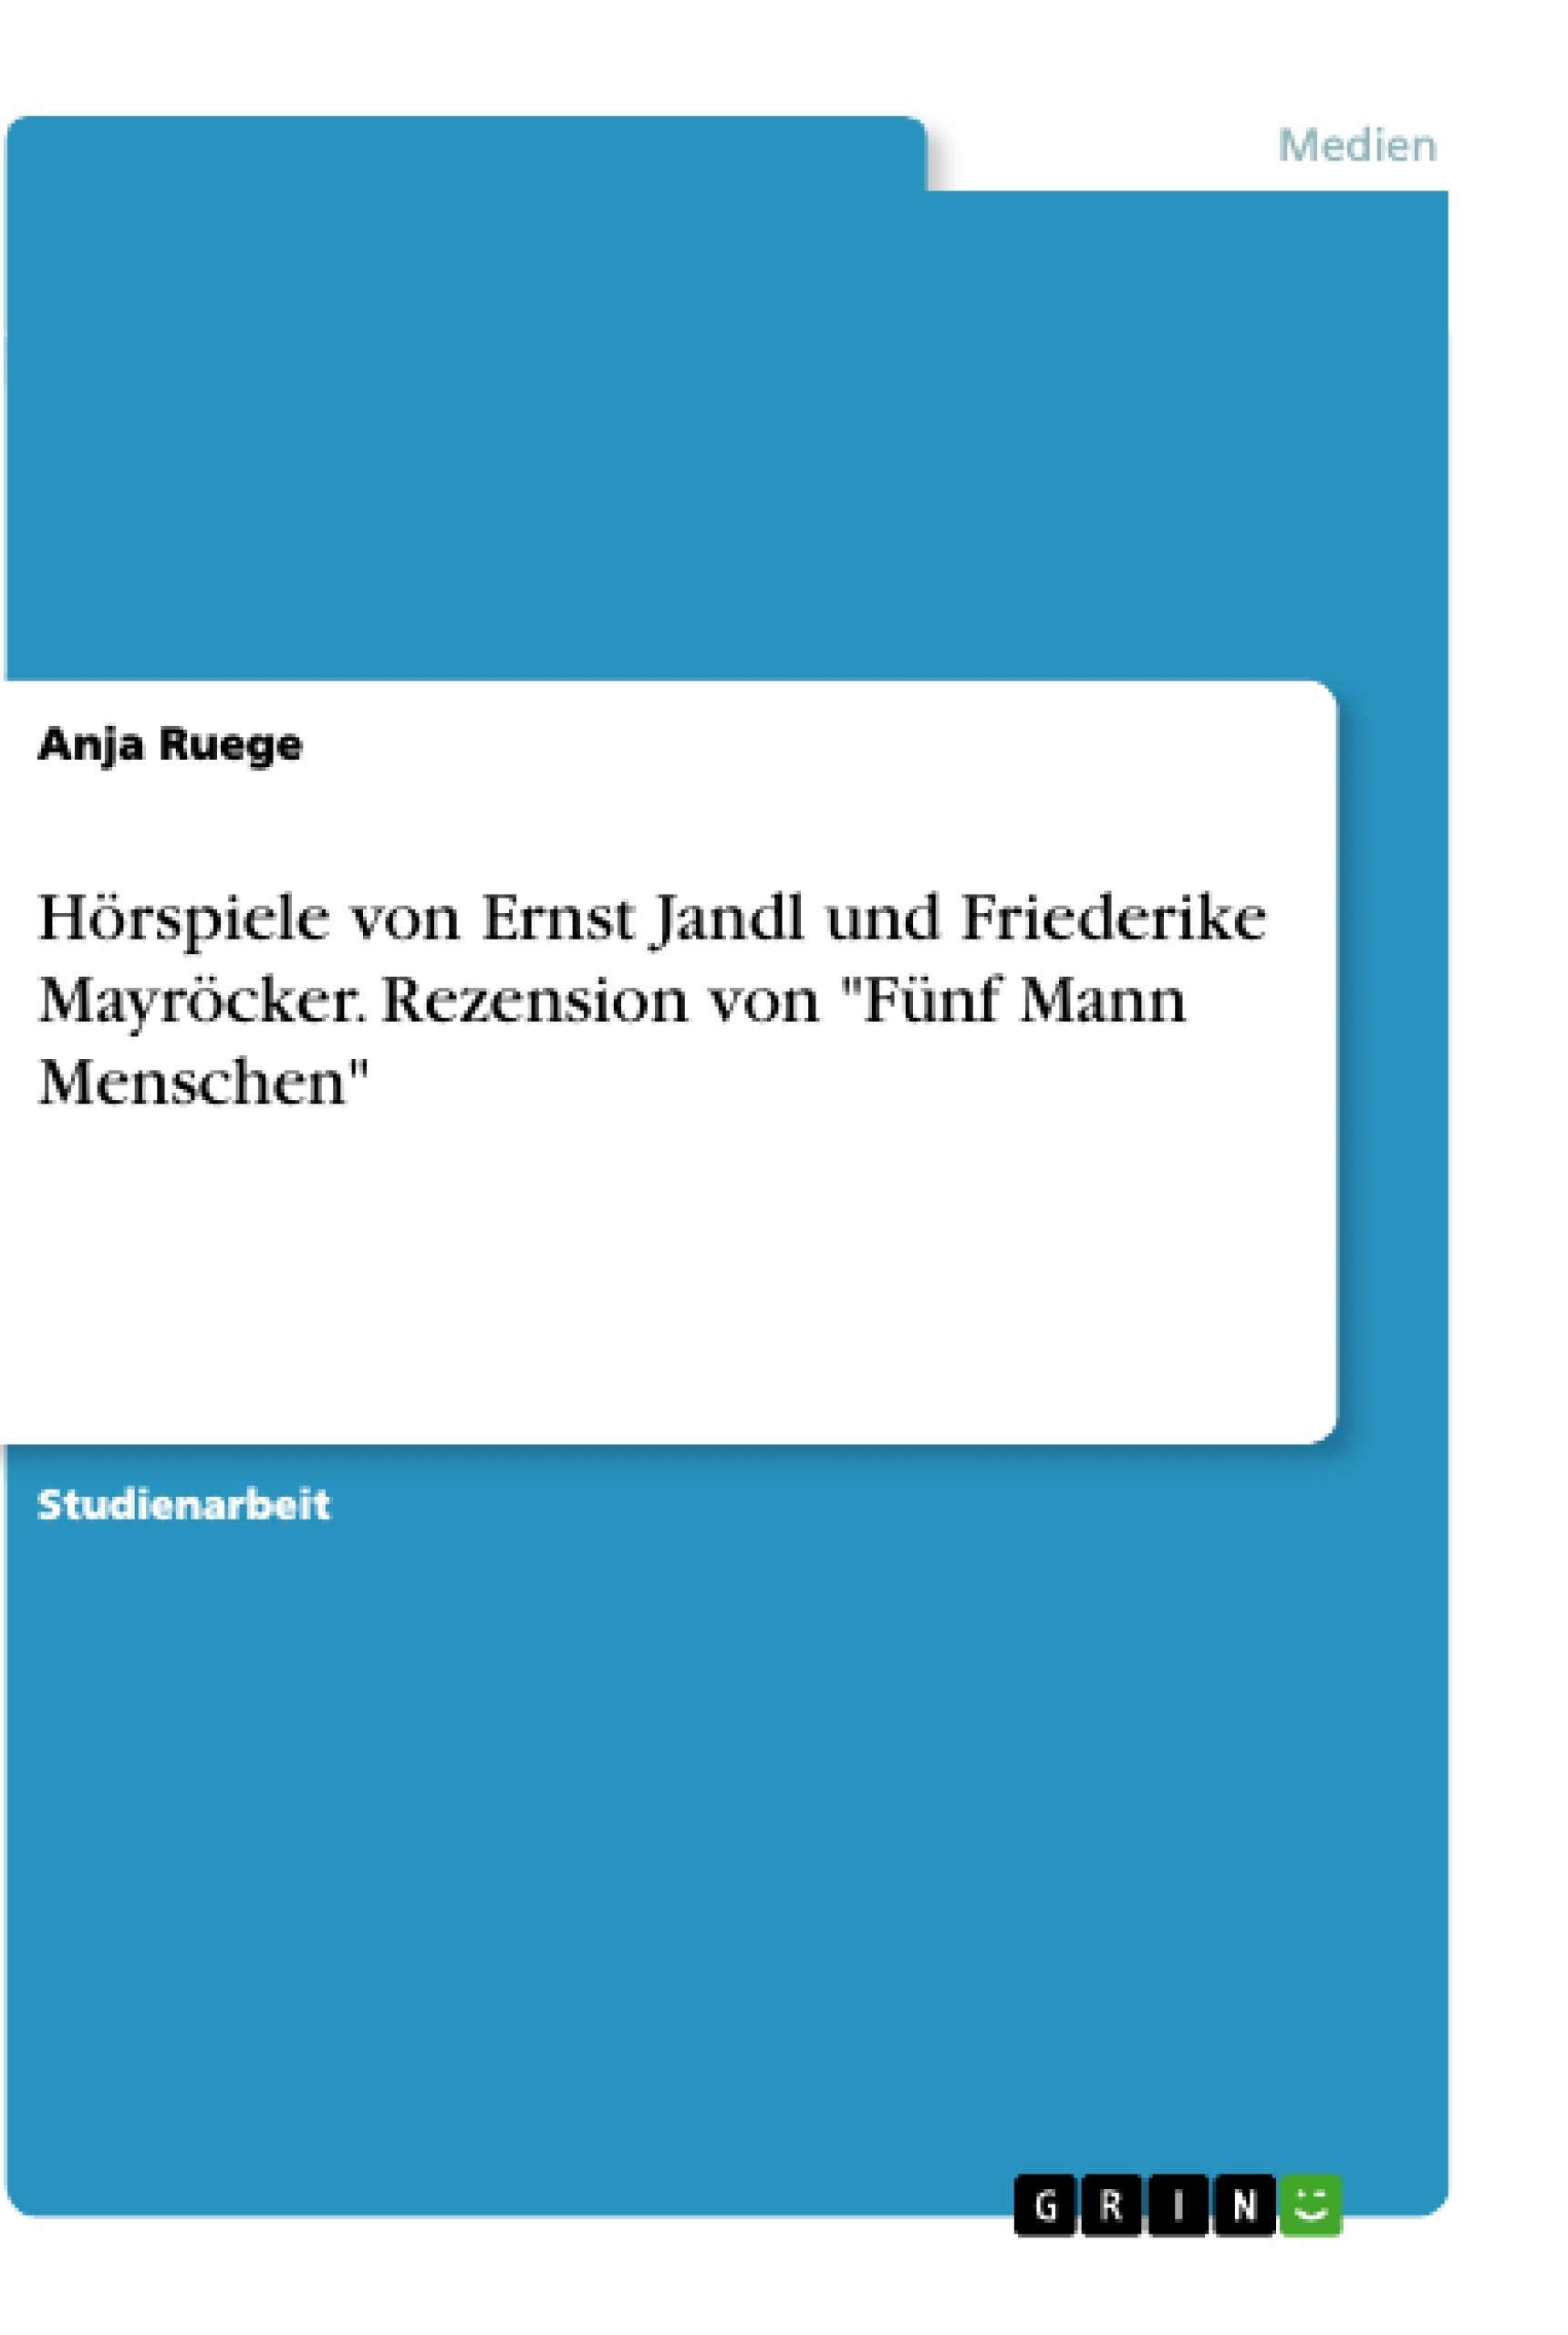 Titel: Hörspiele von Ernst Jandl und Friederike Mayröcker. Rezension von "Fünf Mann Menschen"